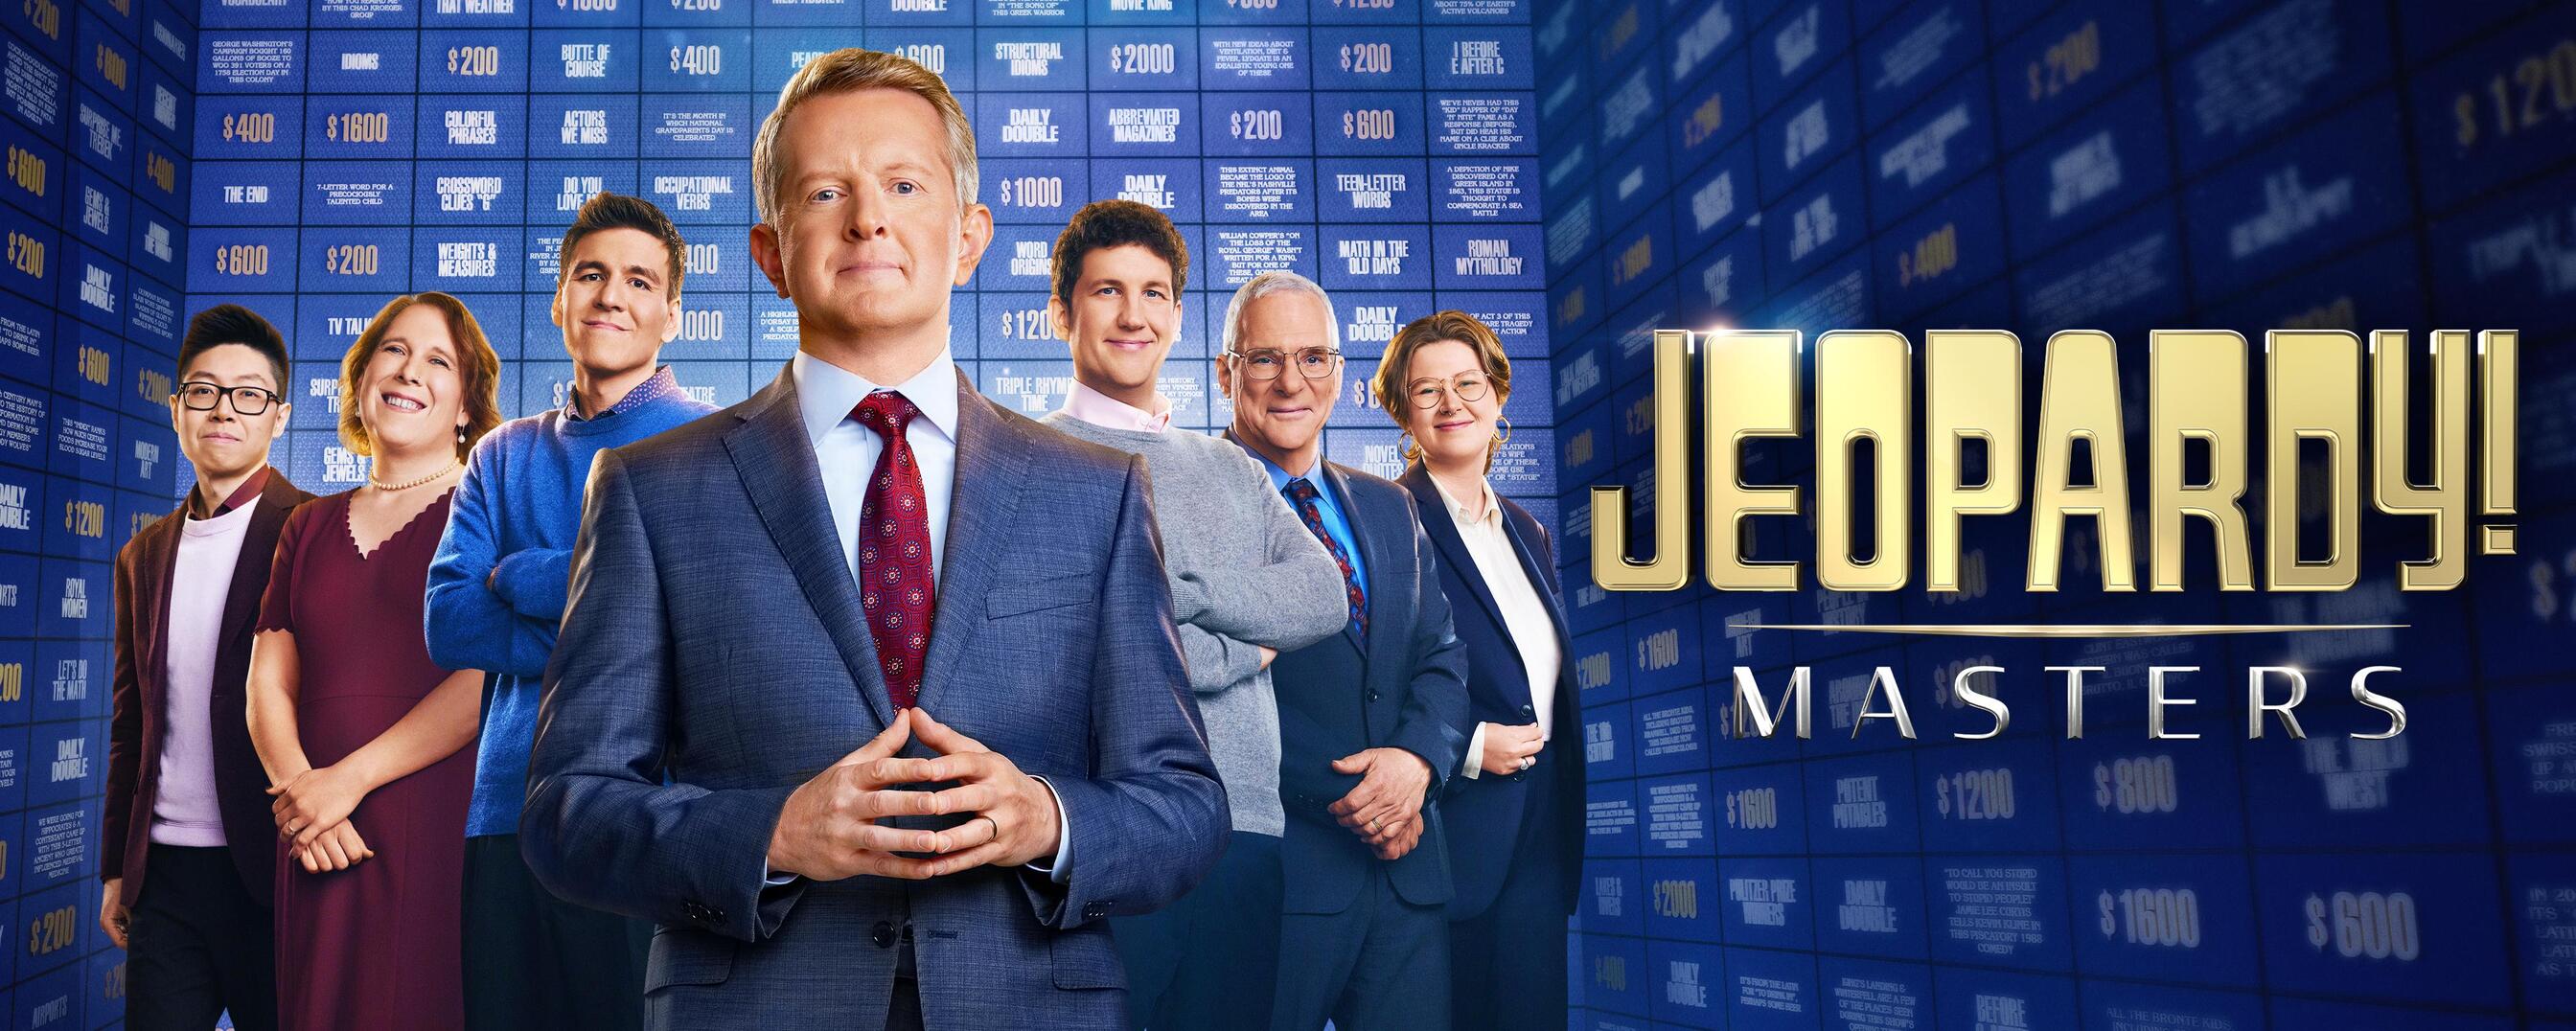 Watch Jeopardy! Masters TV Show